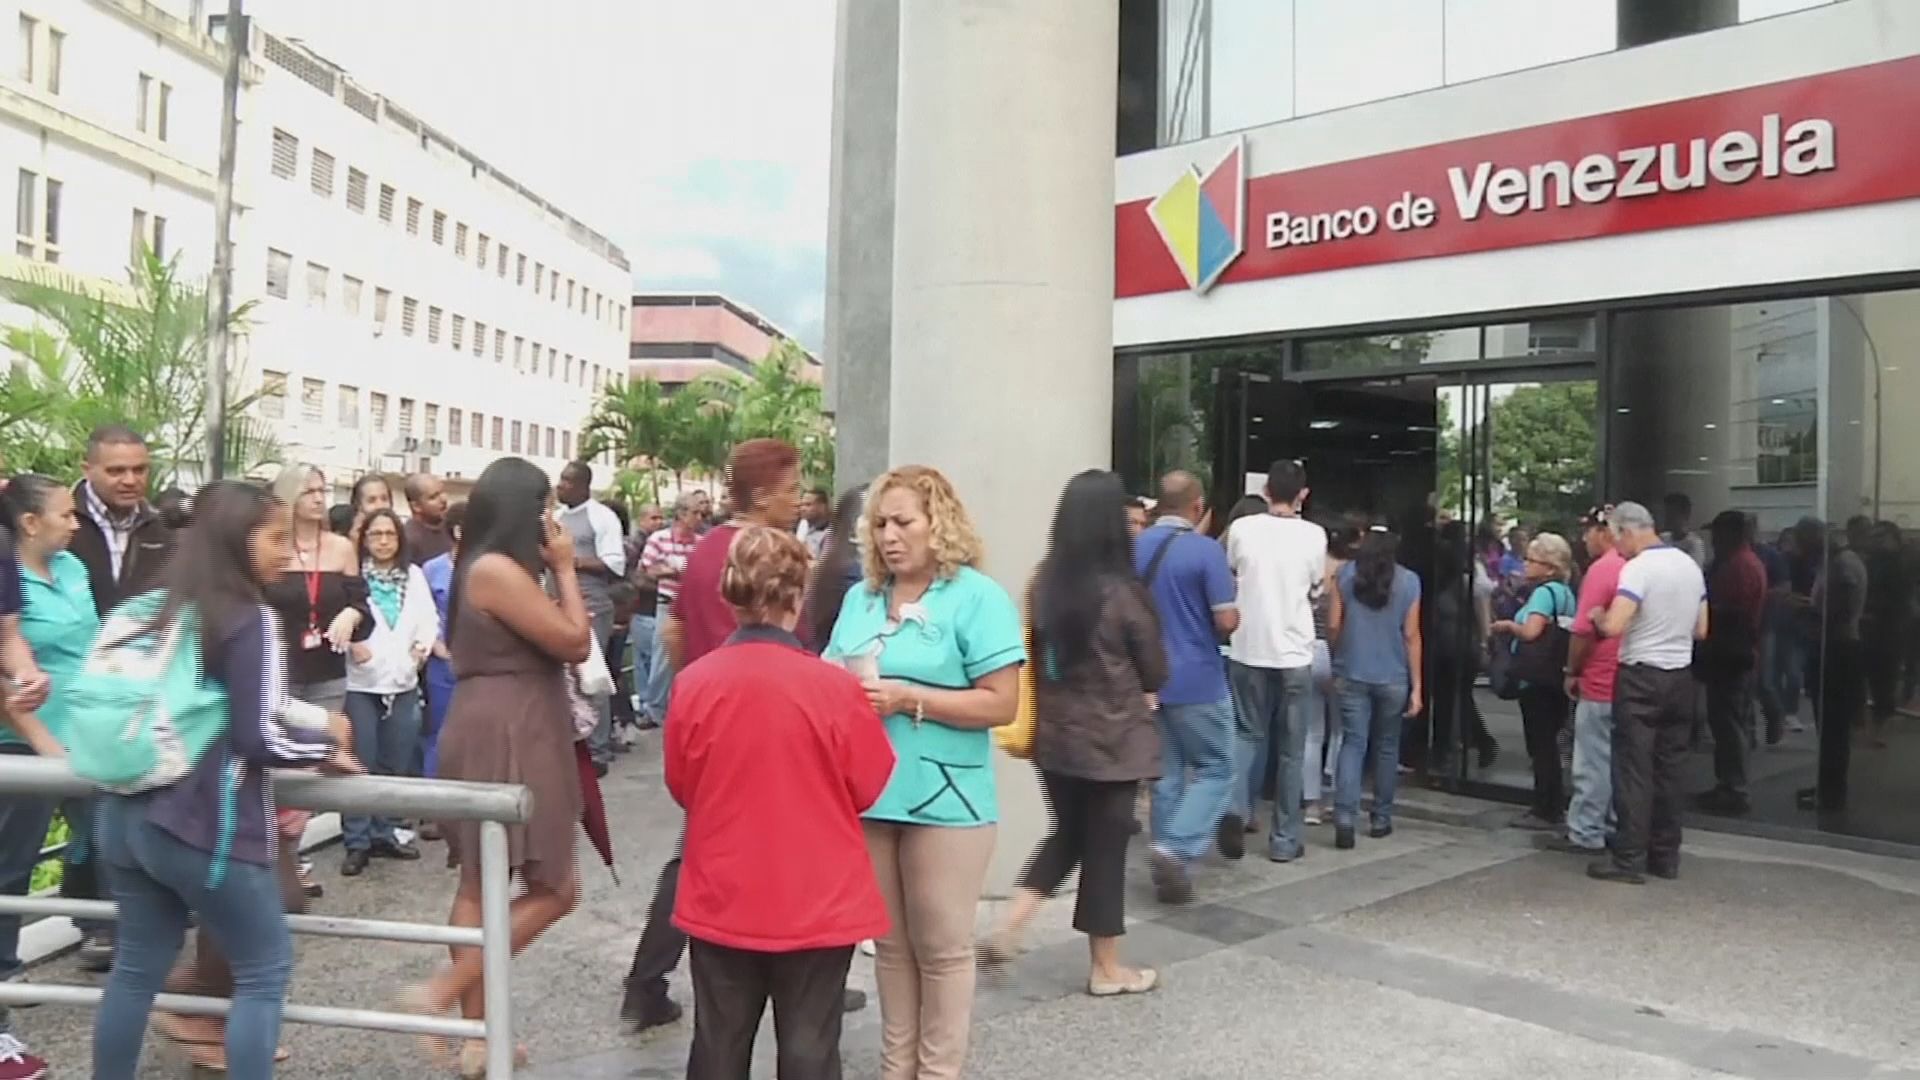 委內瑞拉新貨幣啟用銀行大排長龍